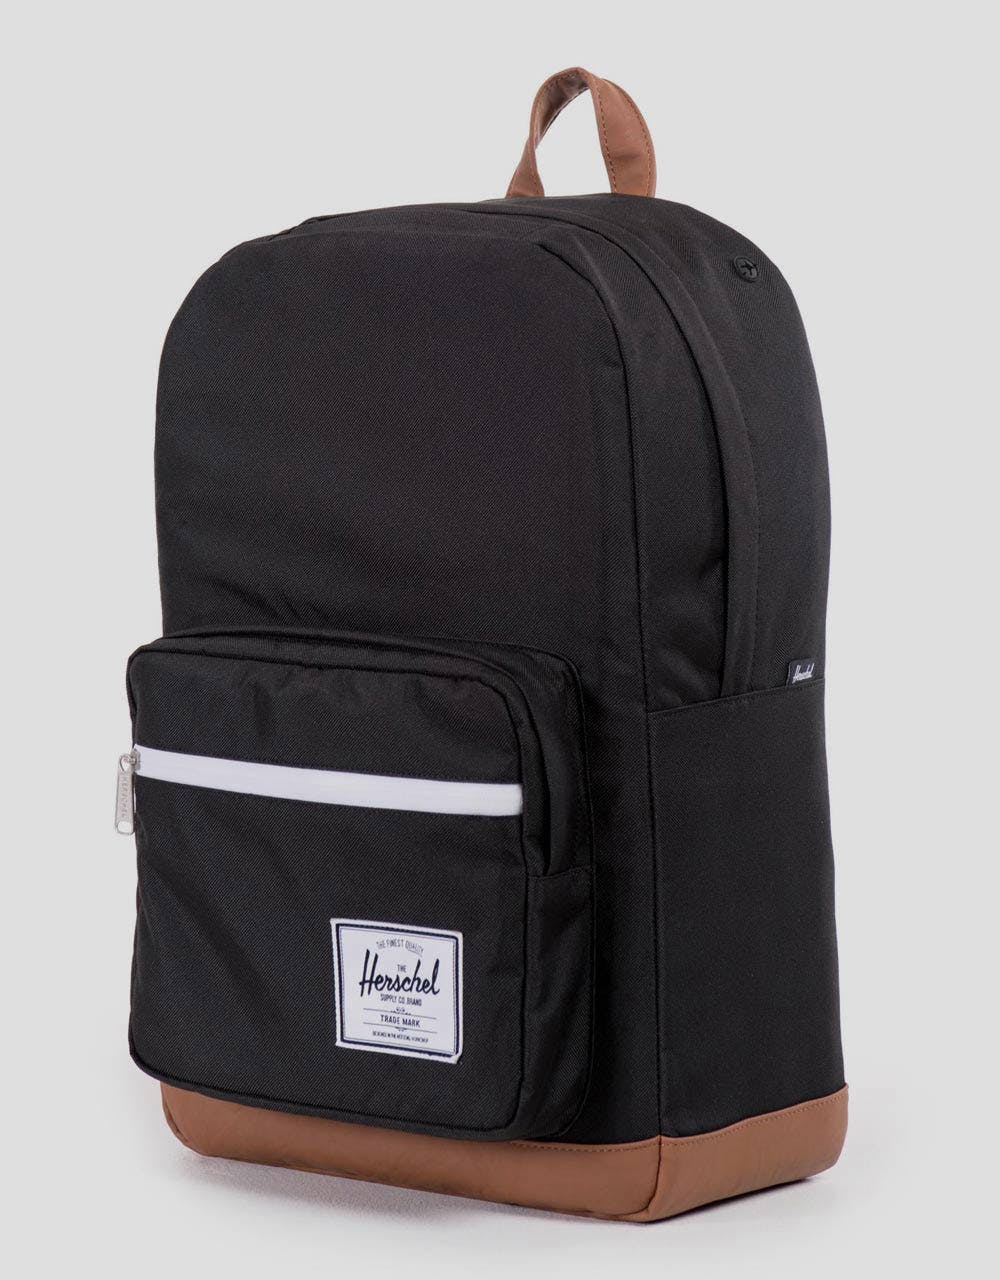 Herschel Supply Co. Pop Quiz Backpack - Black/Tan